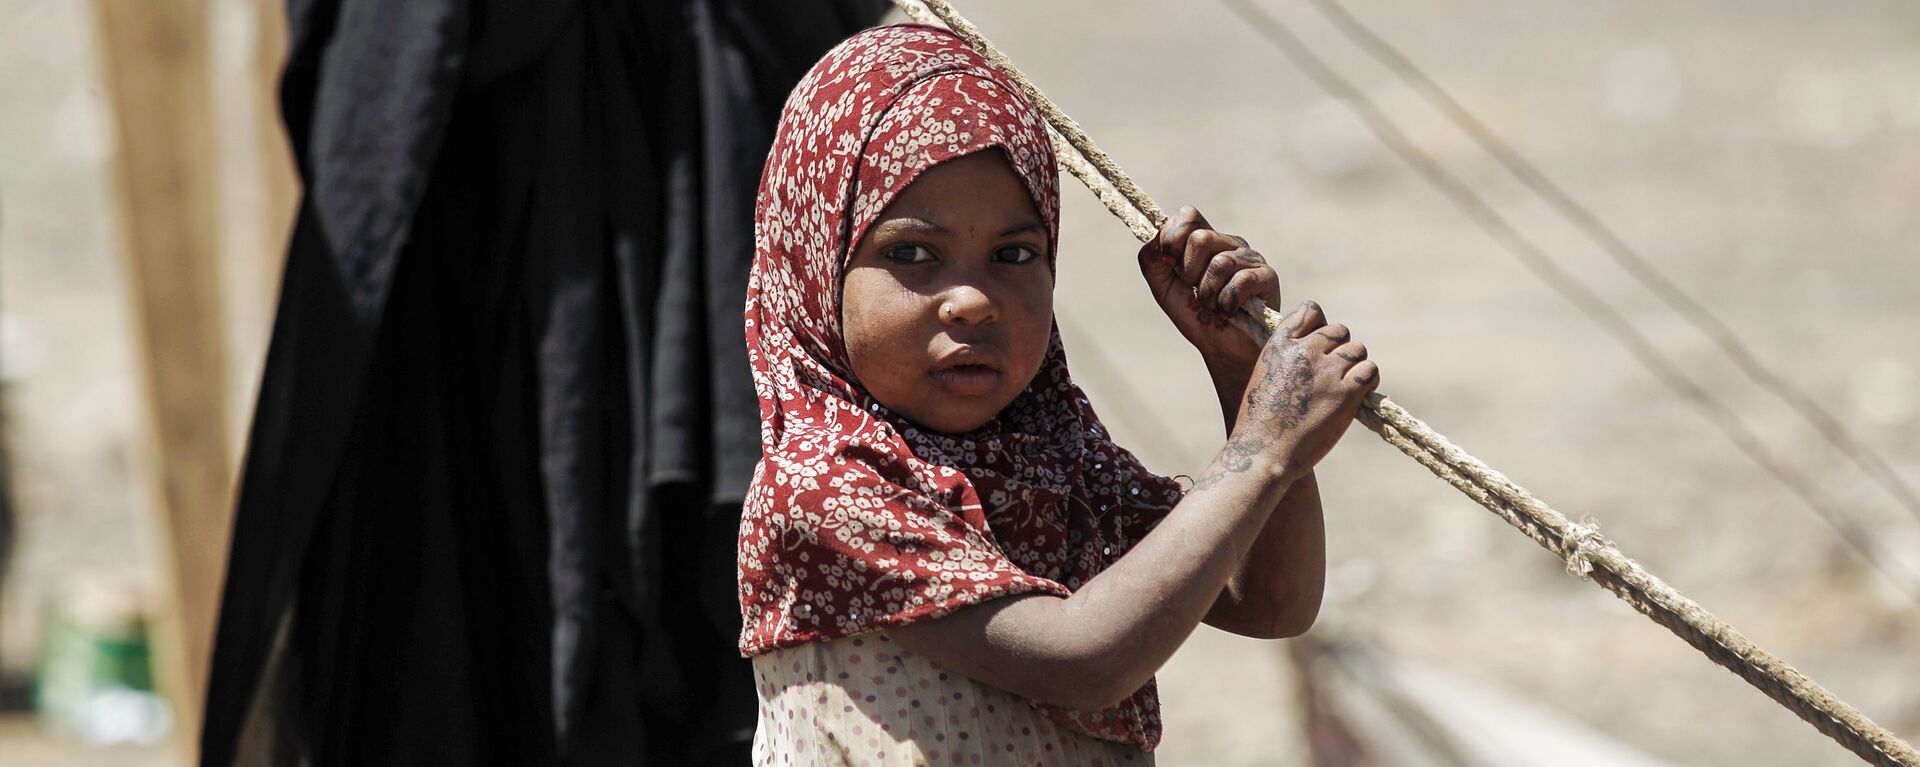 Bé gái Yemen đang chờ viện trợ nhân đạo ở Sana'a. - Sputnik Việt Nam, 1920, 06.06.2020